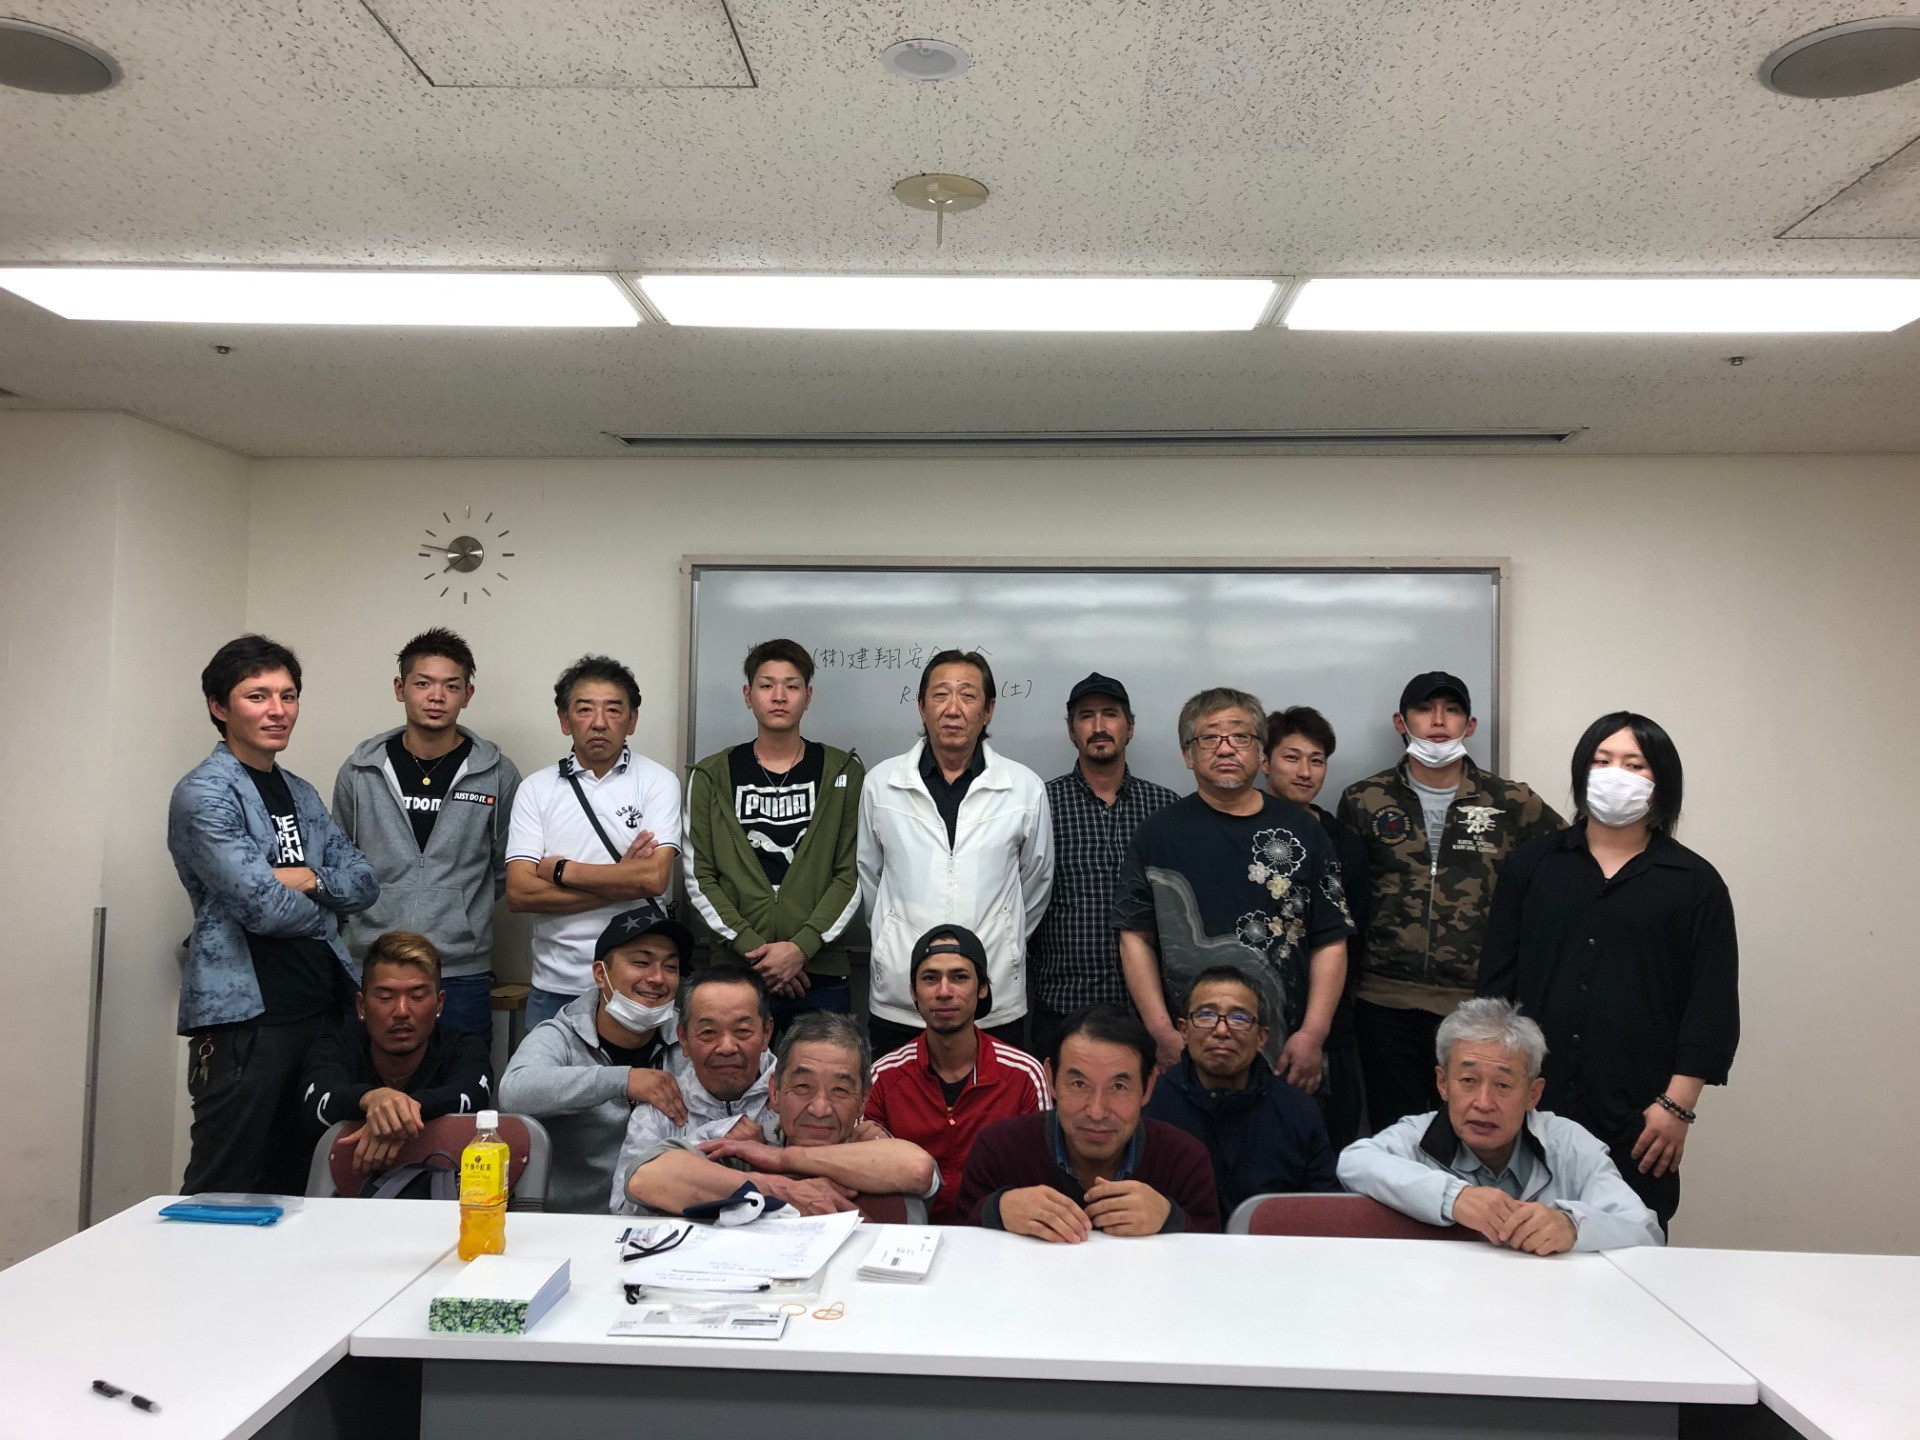 江戸川区で評判の工事業者・株式会社建翔で働く社員の紹介を行っております